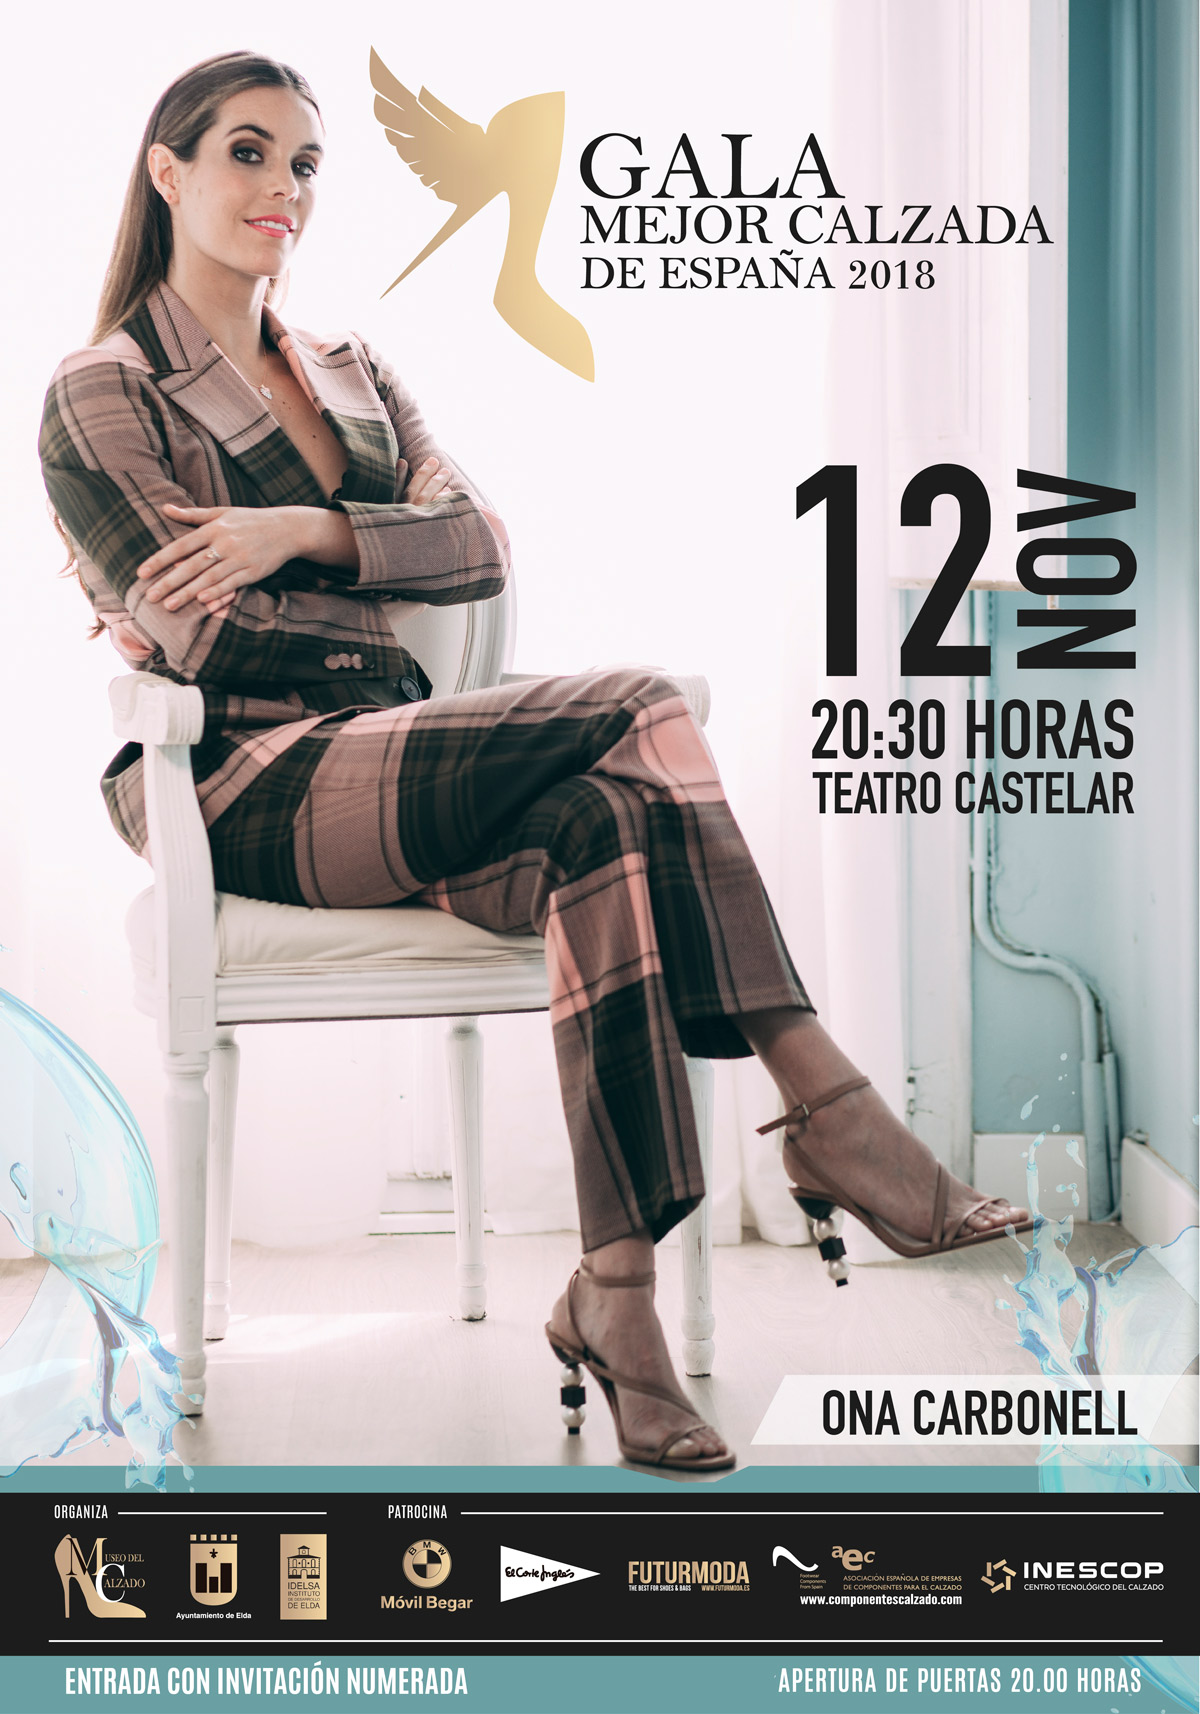 Ona Carbonell la mujer “Mejor Calzada de España 2018”